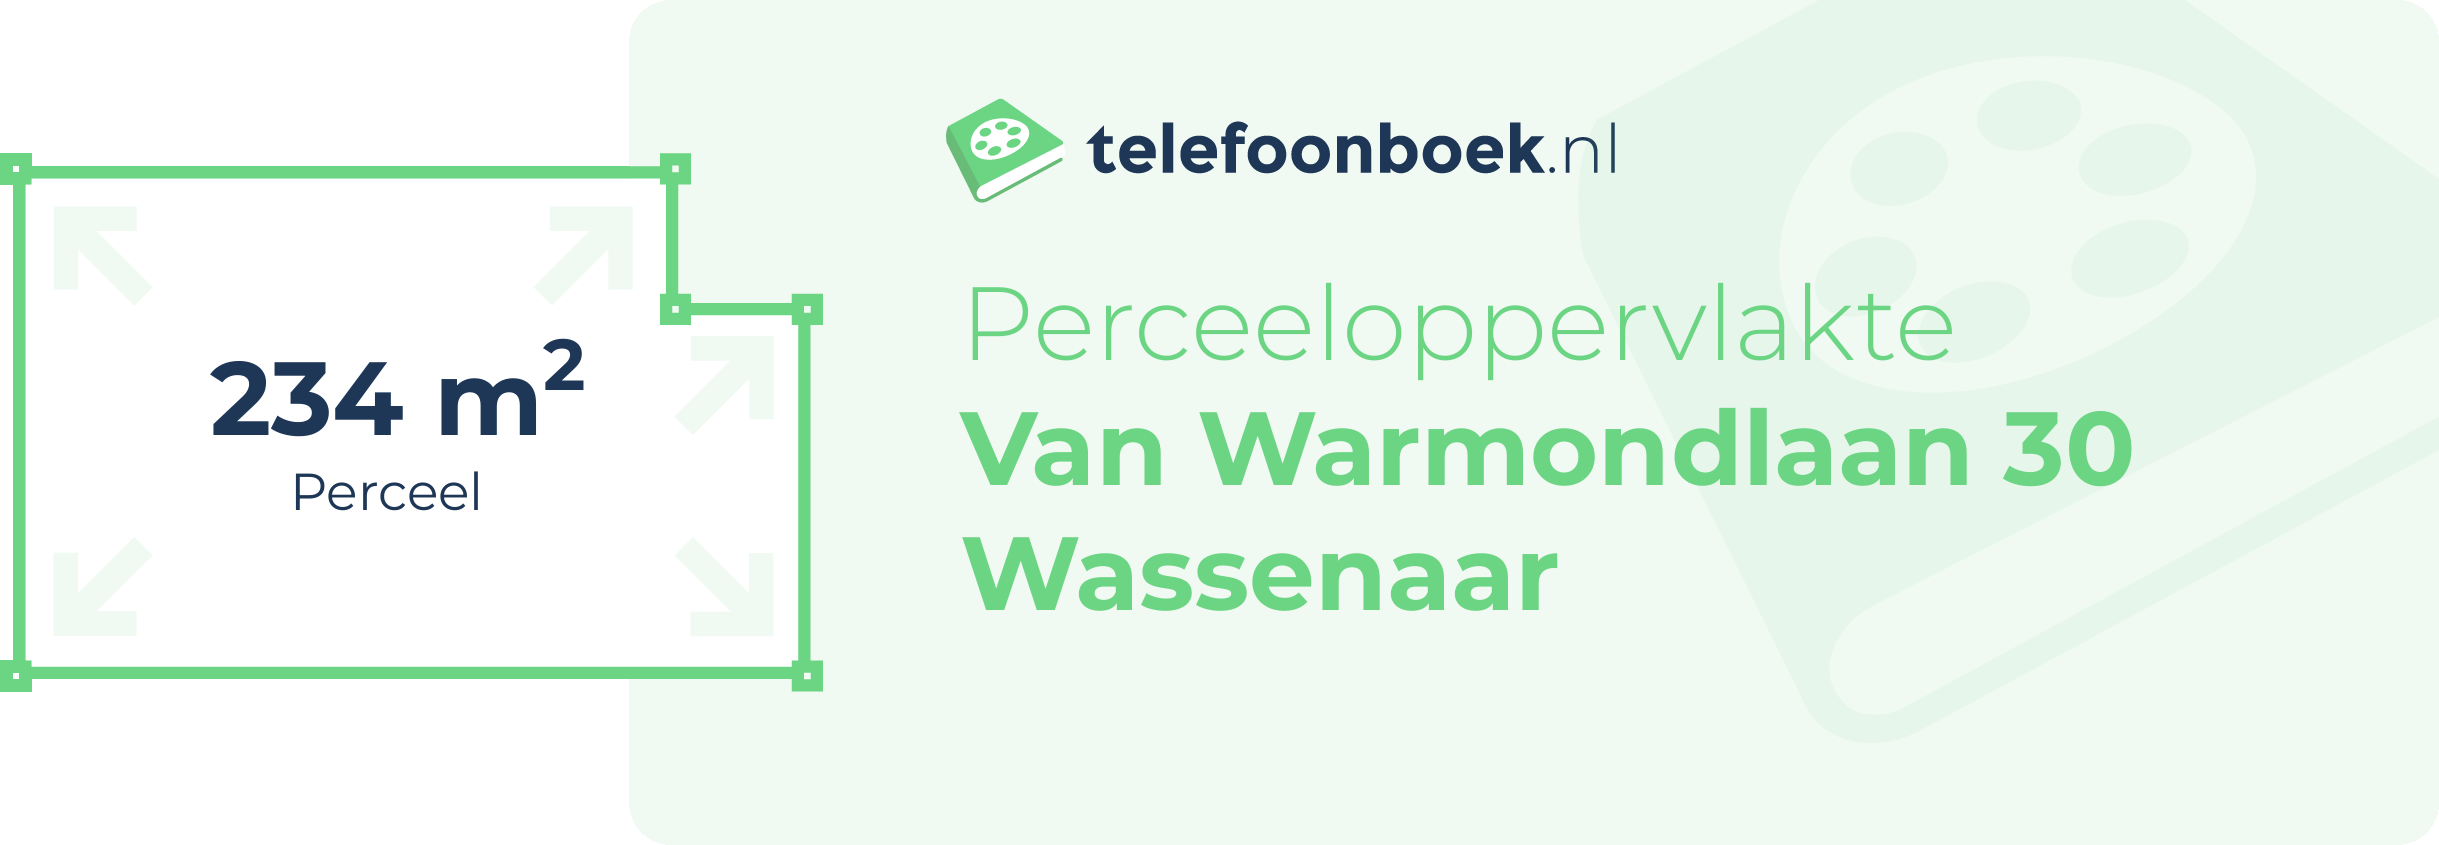 Perceeloppervlakte Van Warmondlaan 30 Wassenaar